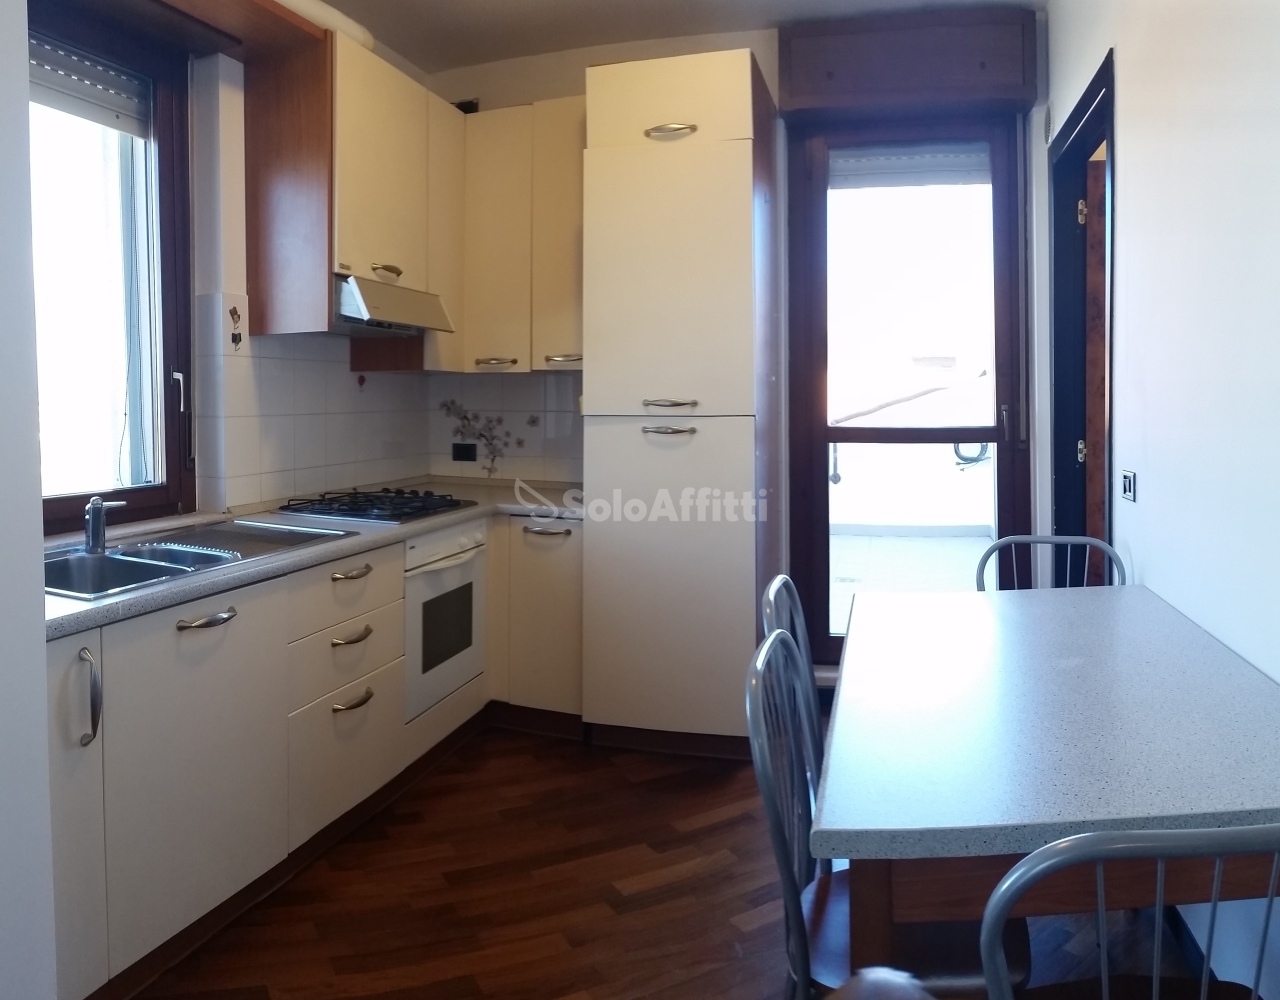 Appartamento in affitto a Cerea, 2 locali, prezzo € 500 | PortaleAgenzieImmobiliari.it